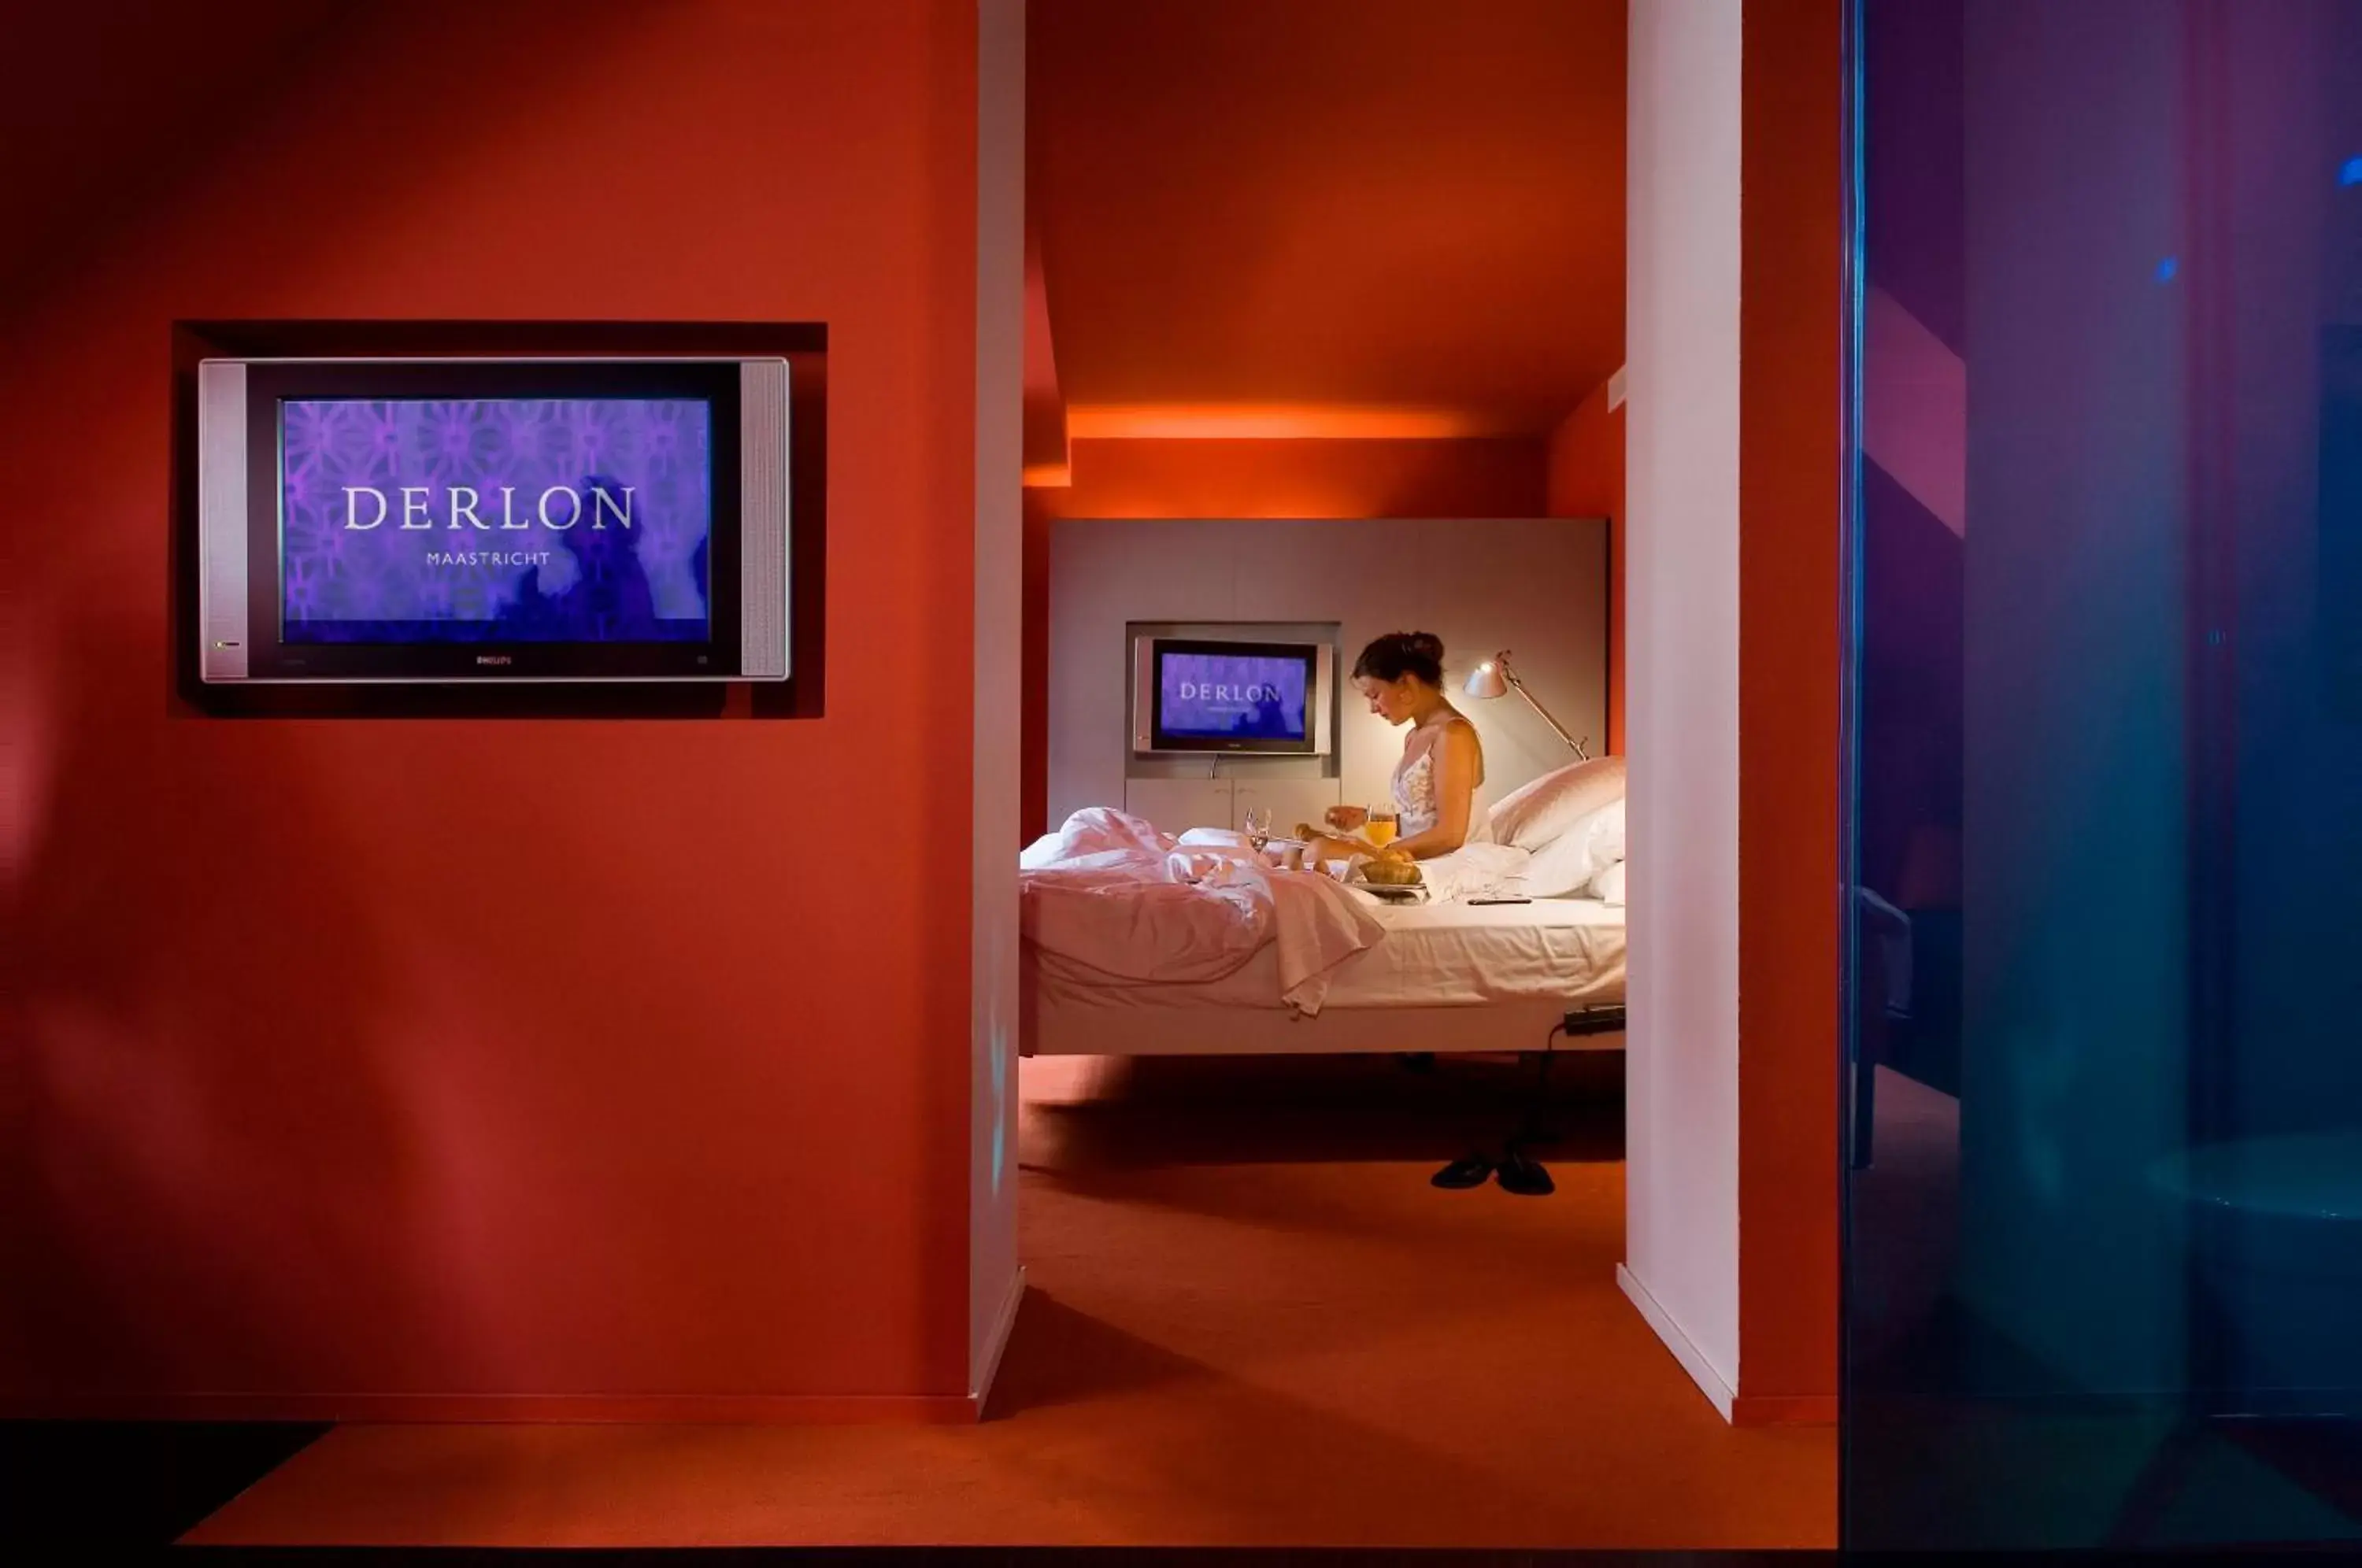 Bed, TV/Entertainment Center in Derlon Hotel Maastricht